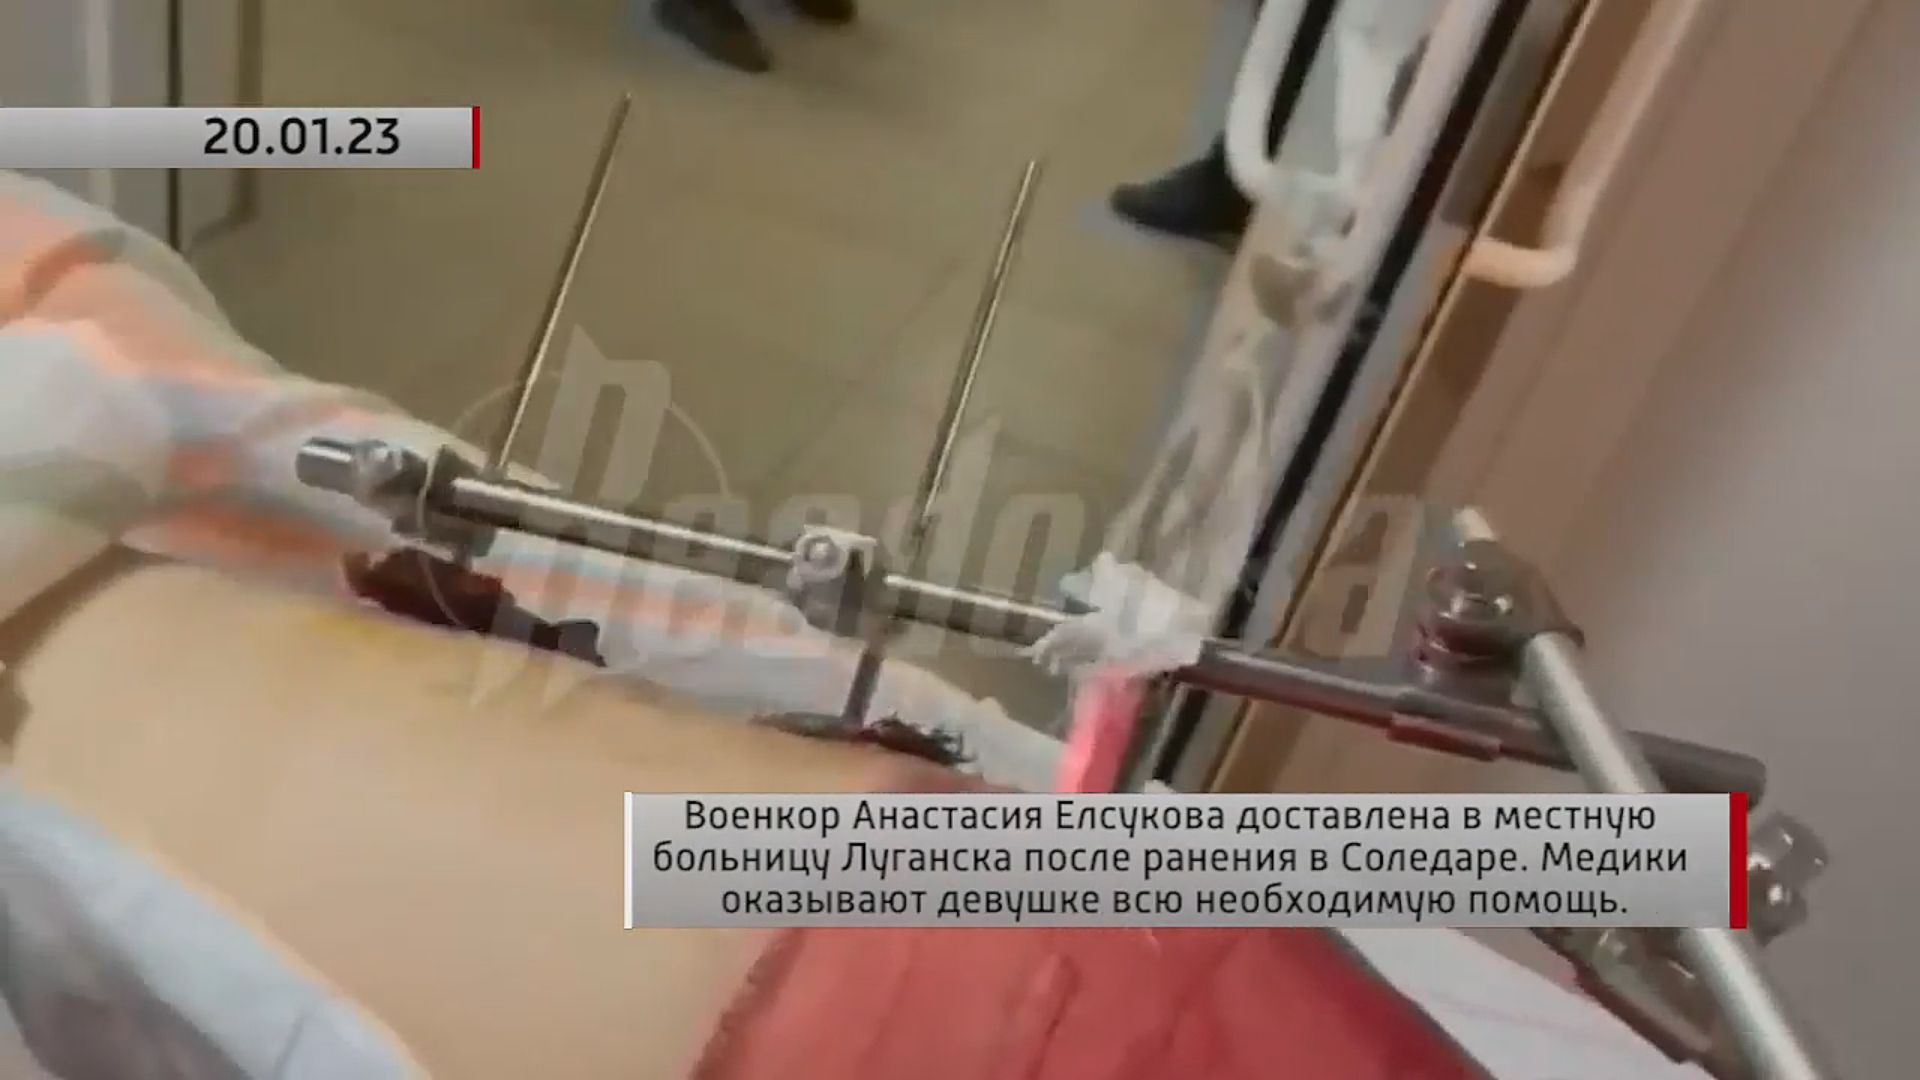 Анастасия Елсукова доставлена в больницу Луганска после ранения в Соледаре. Актуально. 20.01.2023